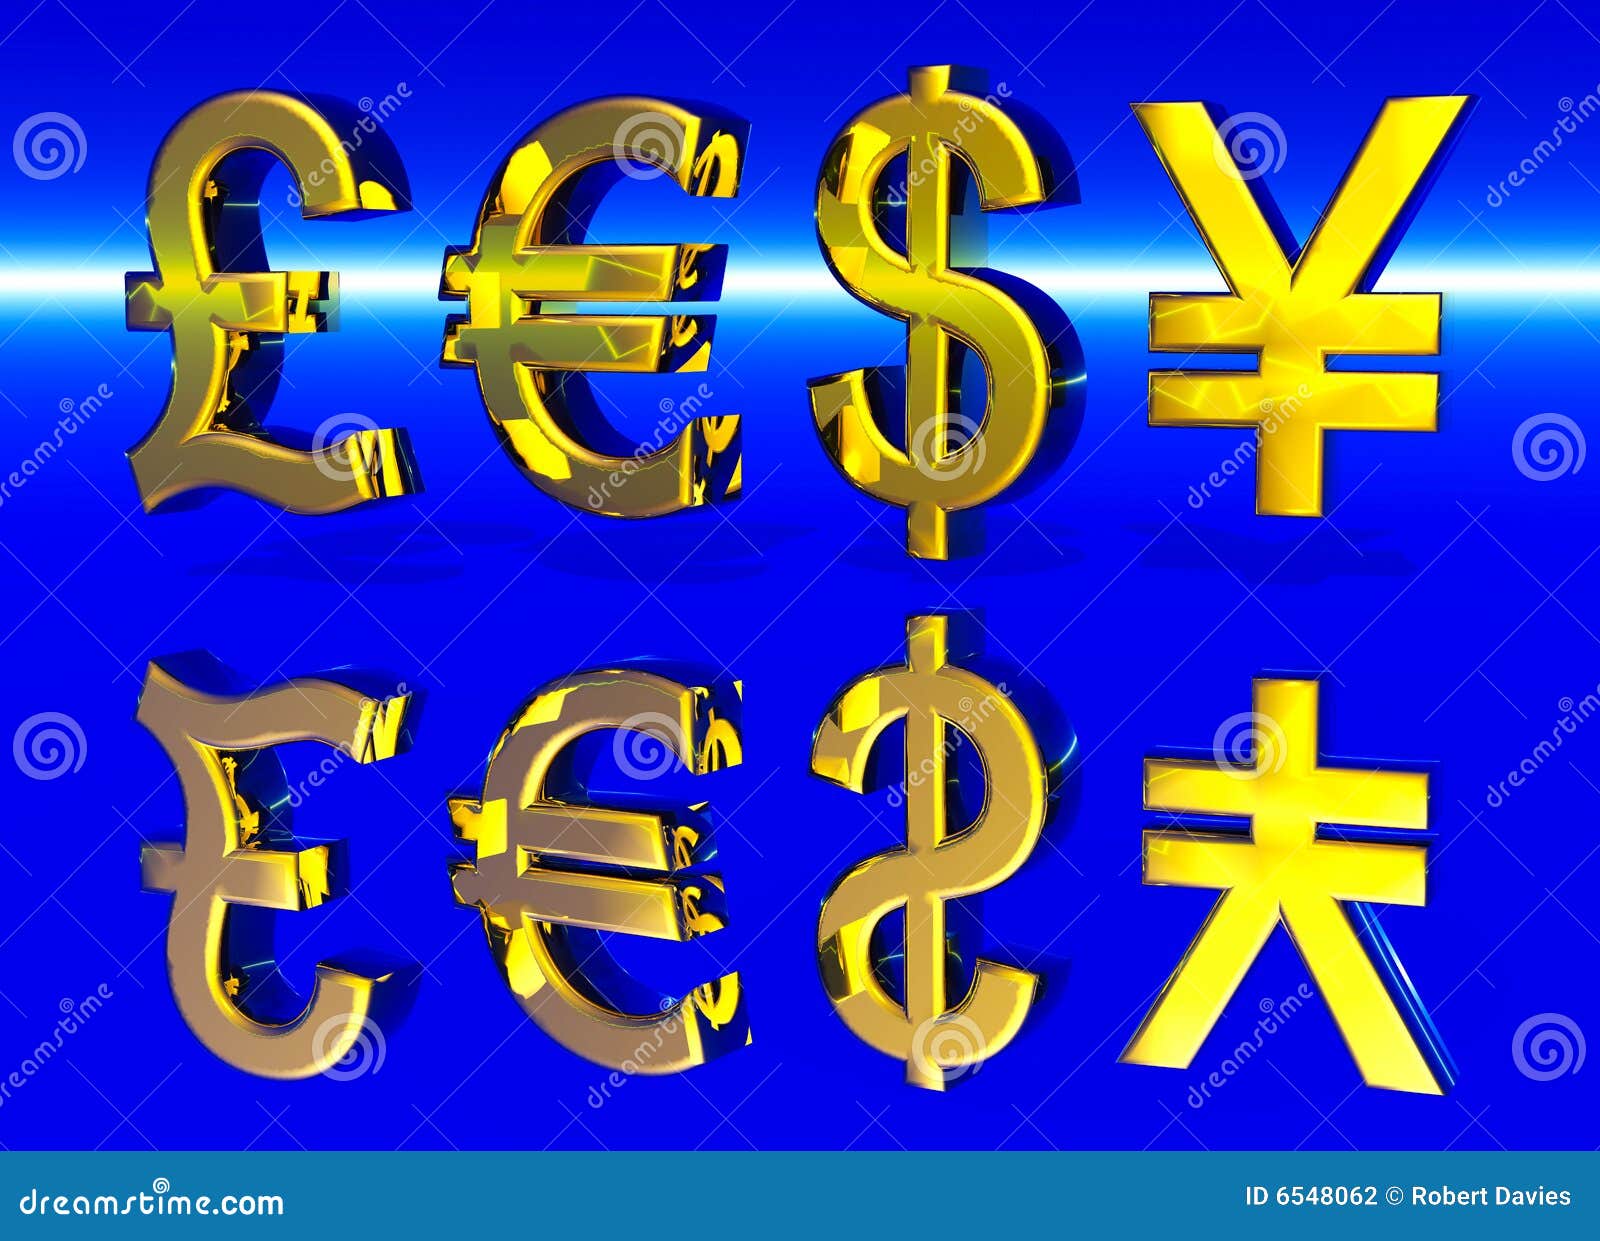 Евро доллар фунт. Доллар евро фунт. Значок доллара. Знак доллара и евро. Значок доллар евро фунт.